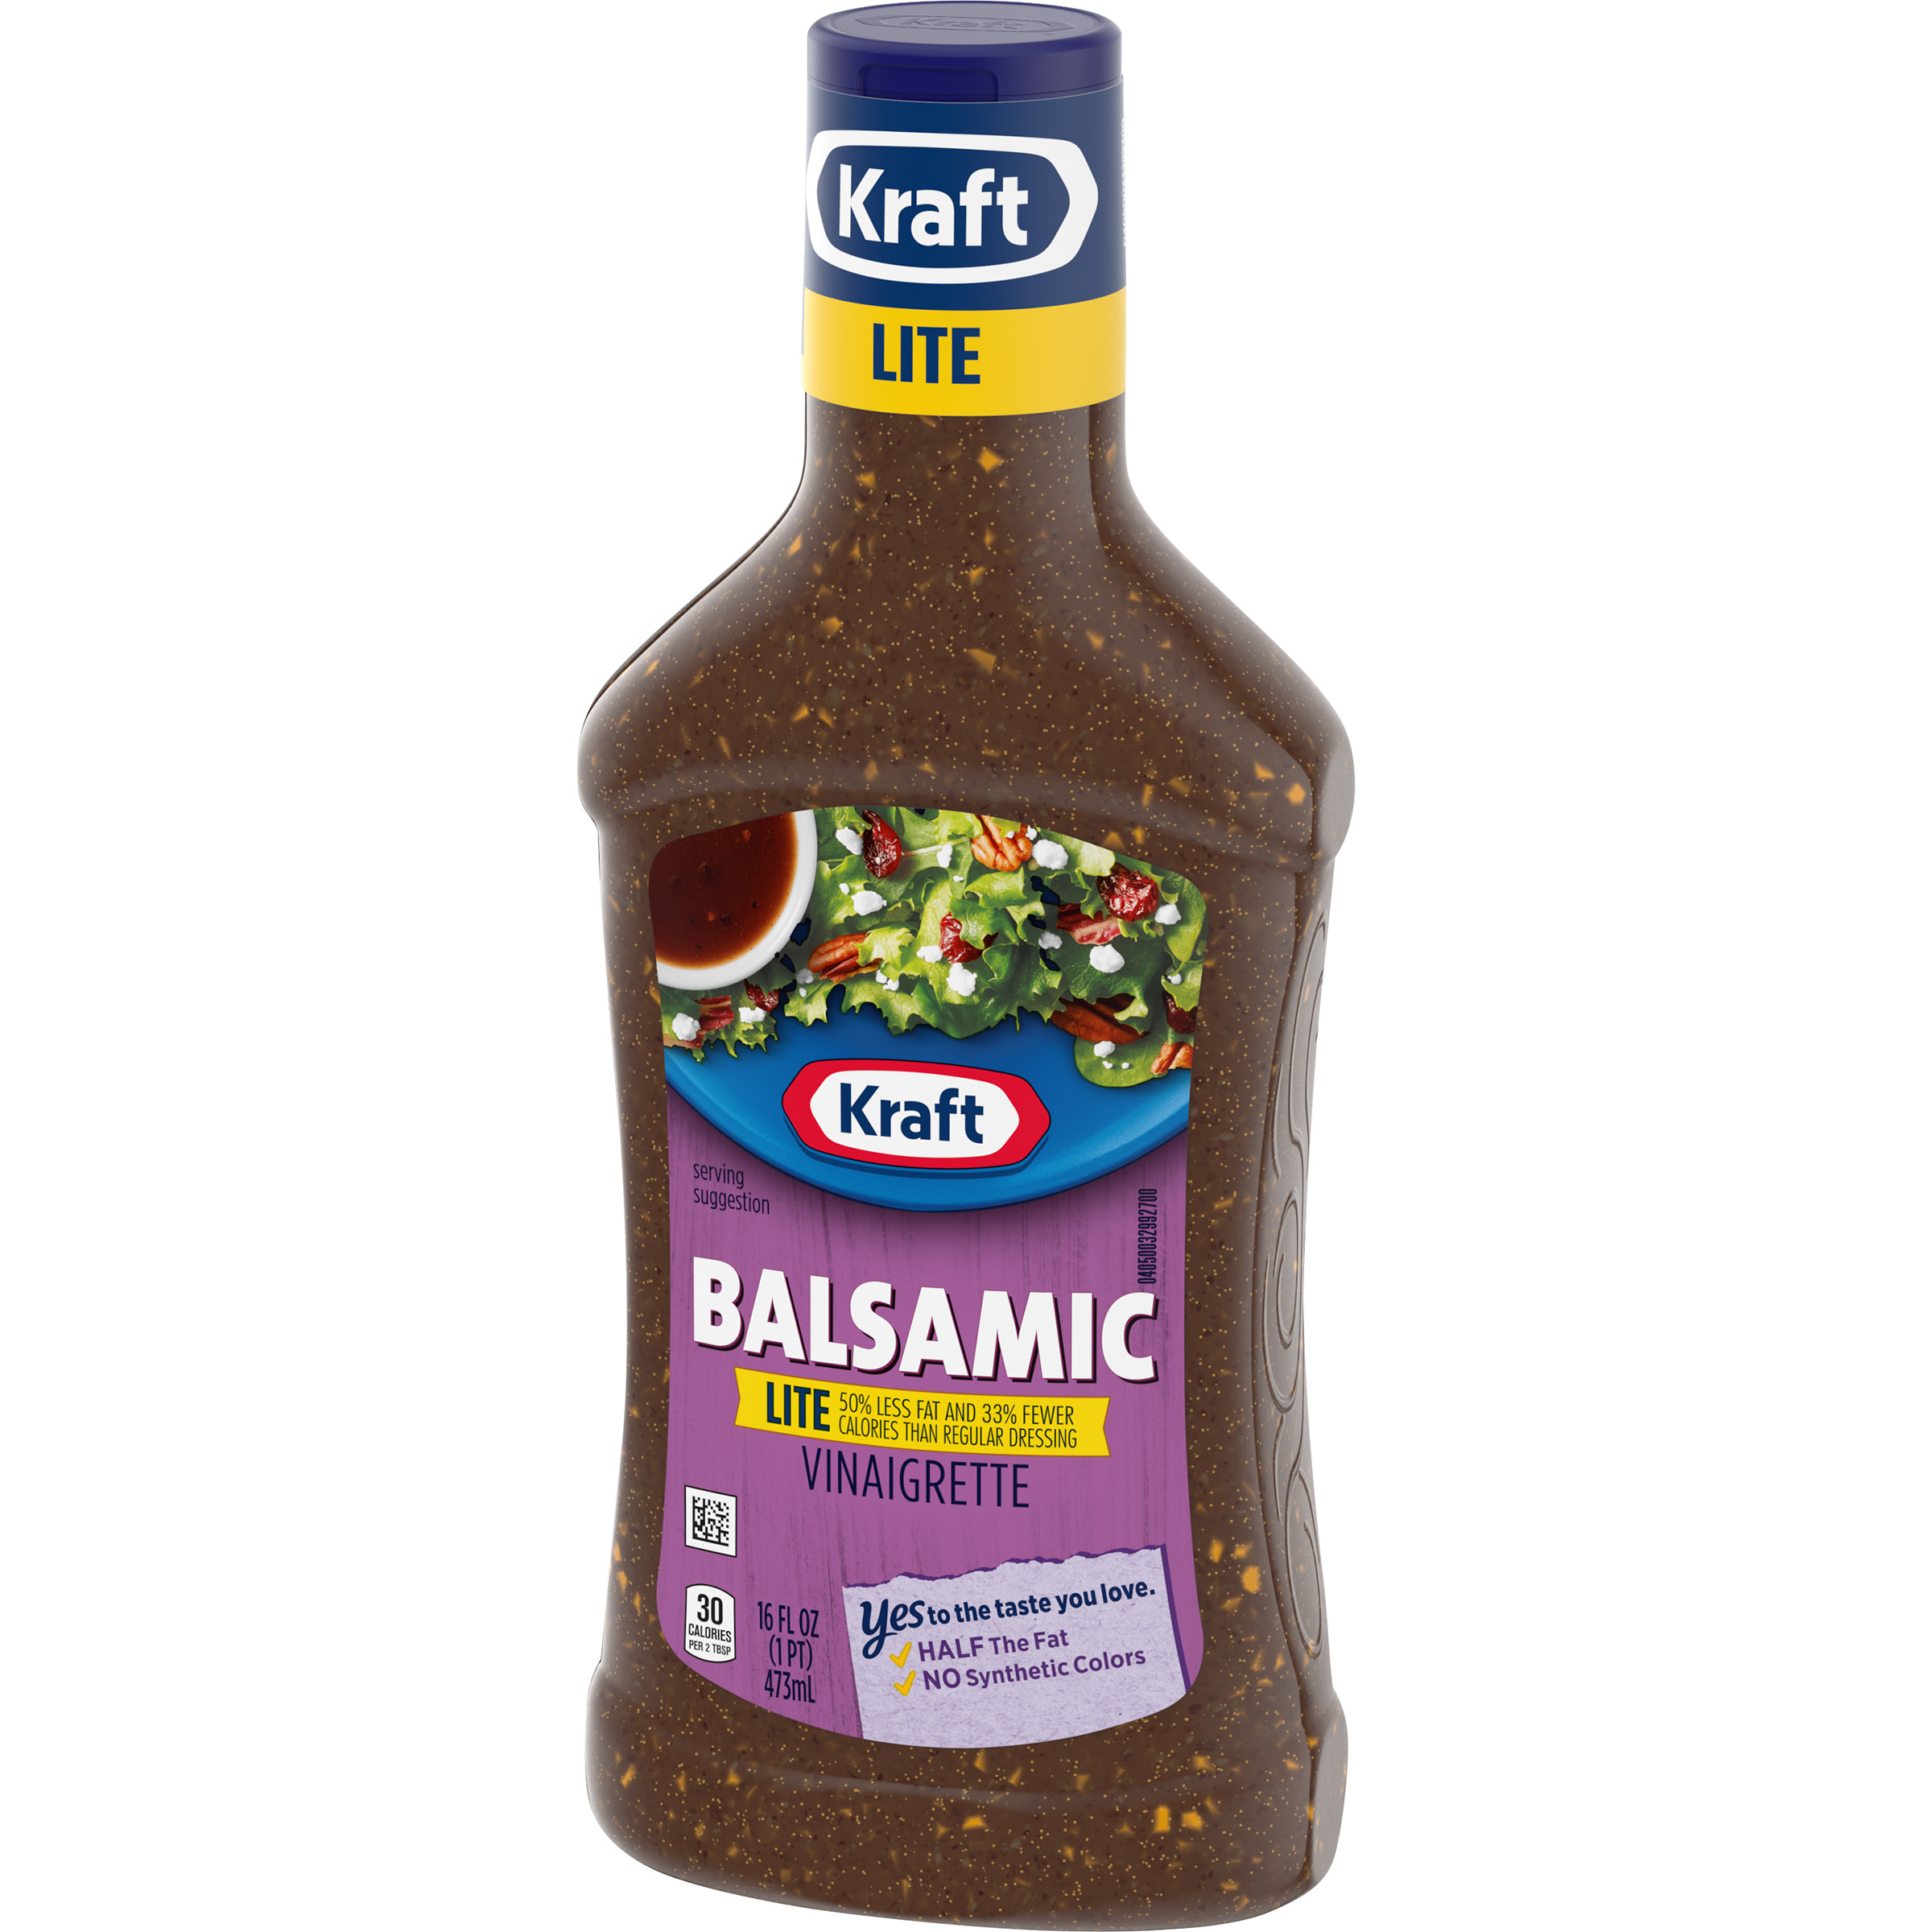 Kraft Balsamic Vinaigrette Lite Salad Dressing, 16 fl oz Bottle - image 5 of 9